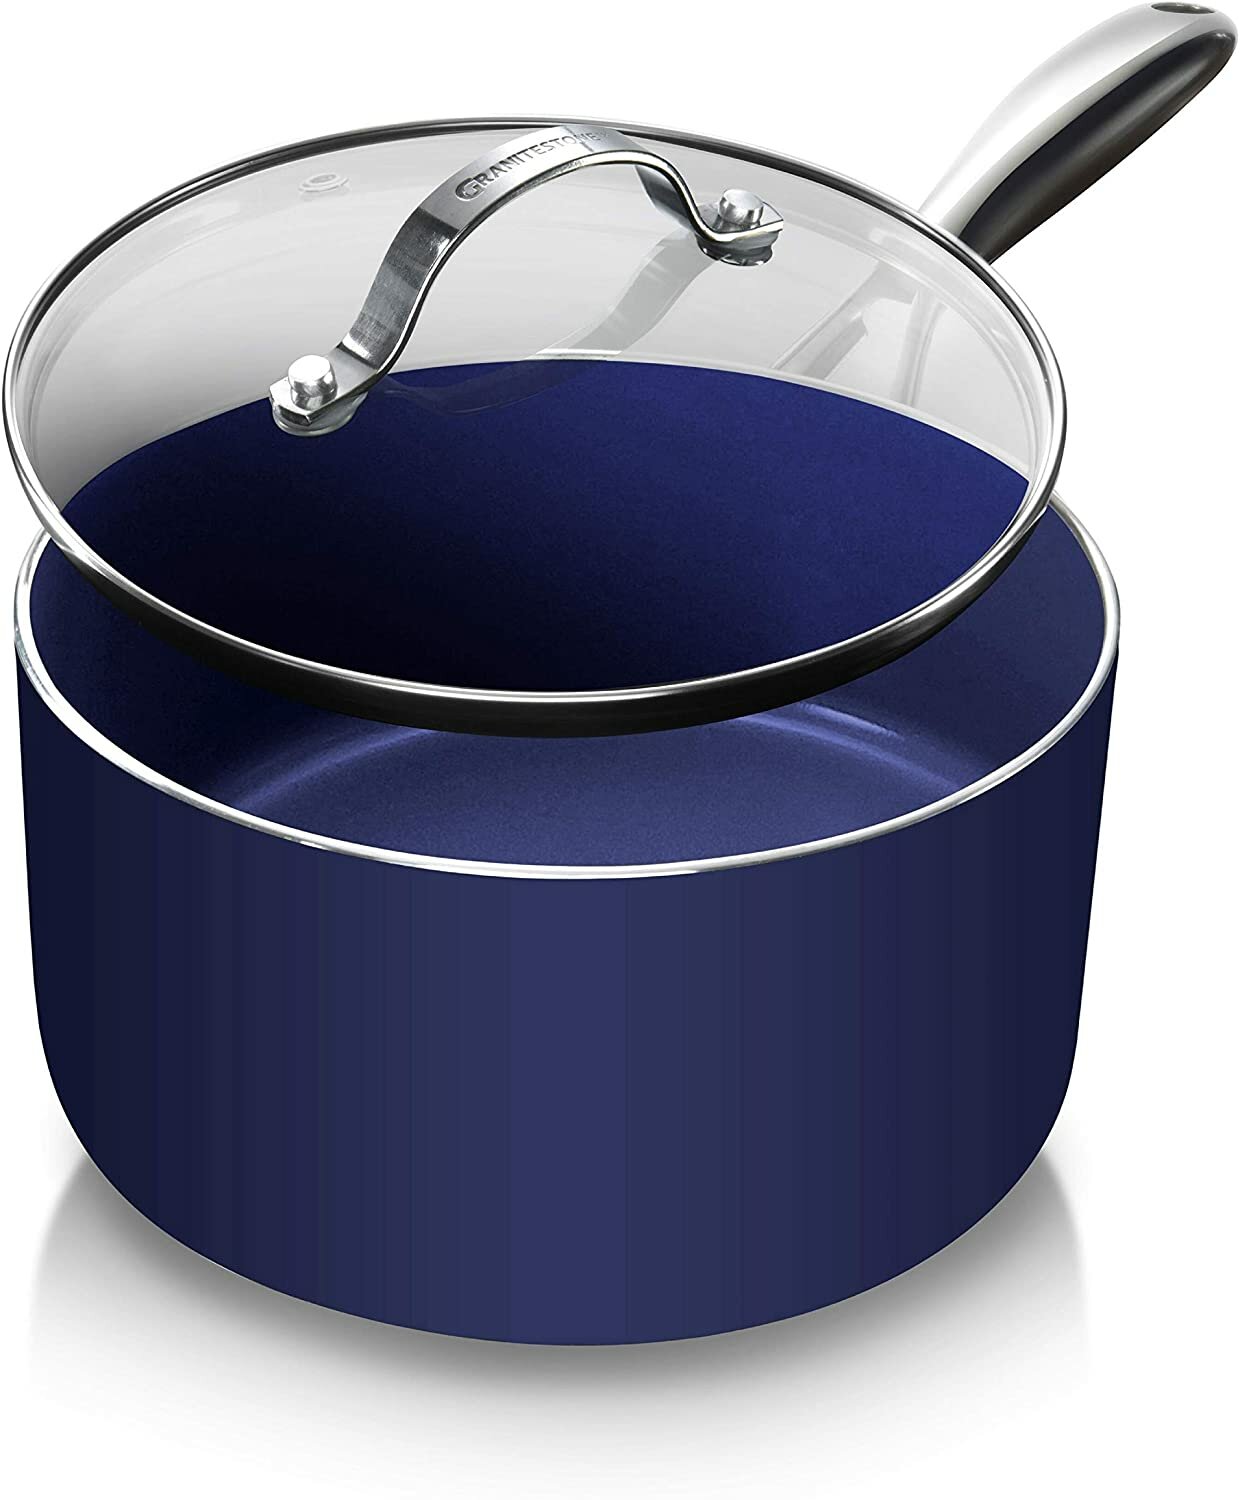 https://assets.wfcdn.com/im/20190683/compr-r85/1156/115677969/granitestone-blue-25-qt-nonstick-sauce-pan-with-tempered-glass-lid-oven-dishwasher-safe.jpg